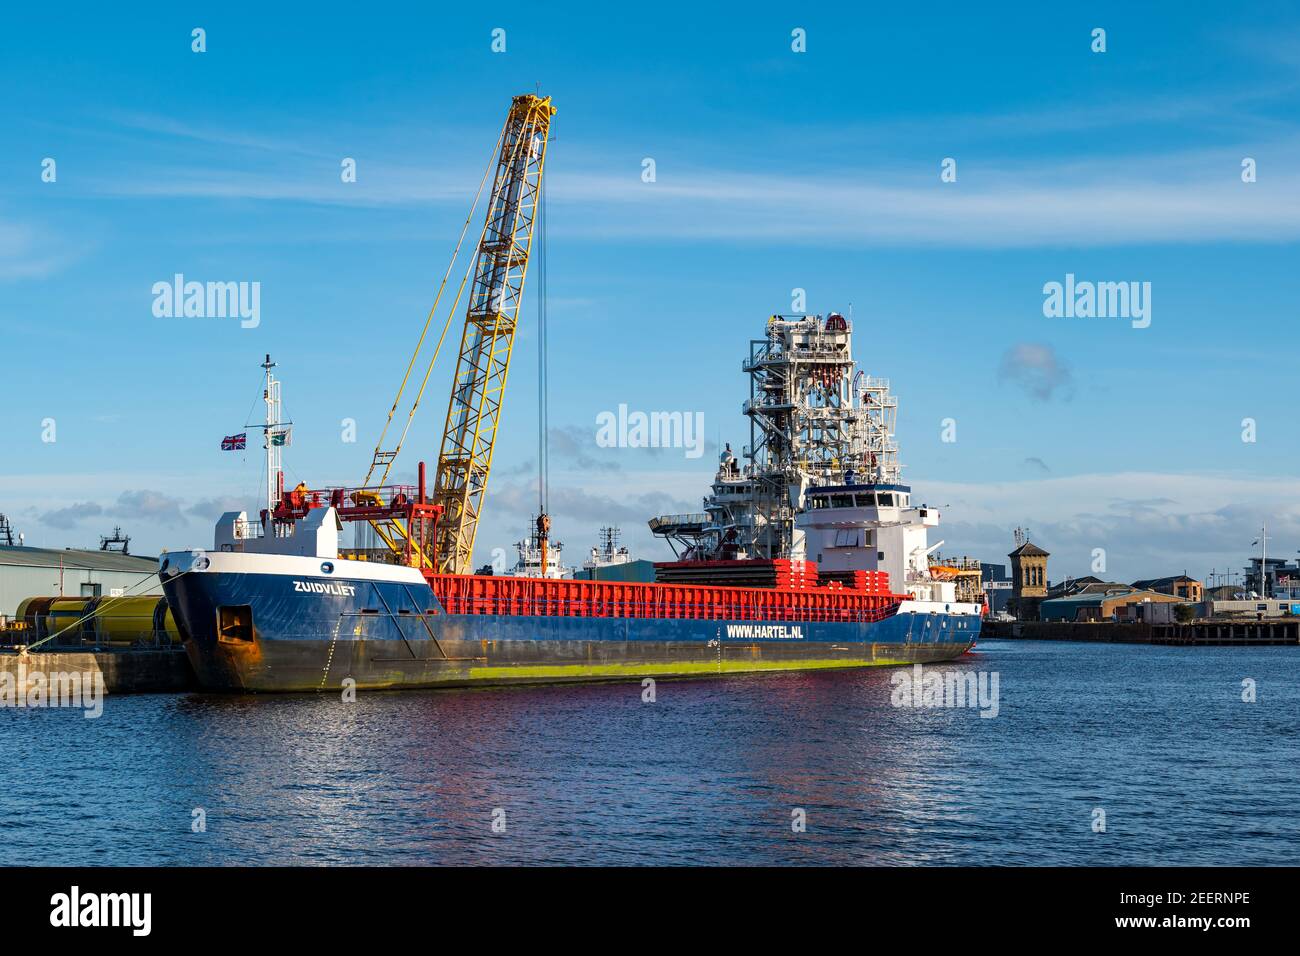 Holländisches Frachtschiff Zuidvliet, Hartel Niederländische Reederei Entladen am Dock, Leith Hafen, Edinburgh, Schottland, Großbritannien Stockfoto